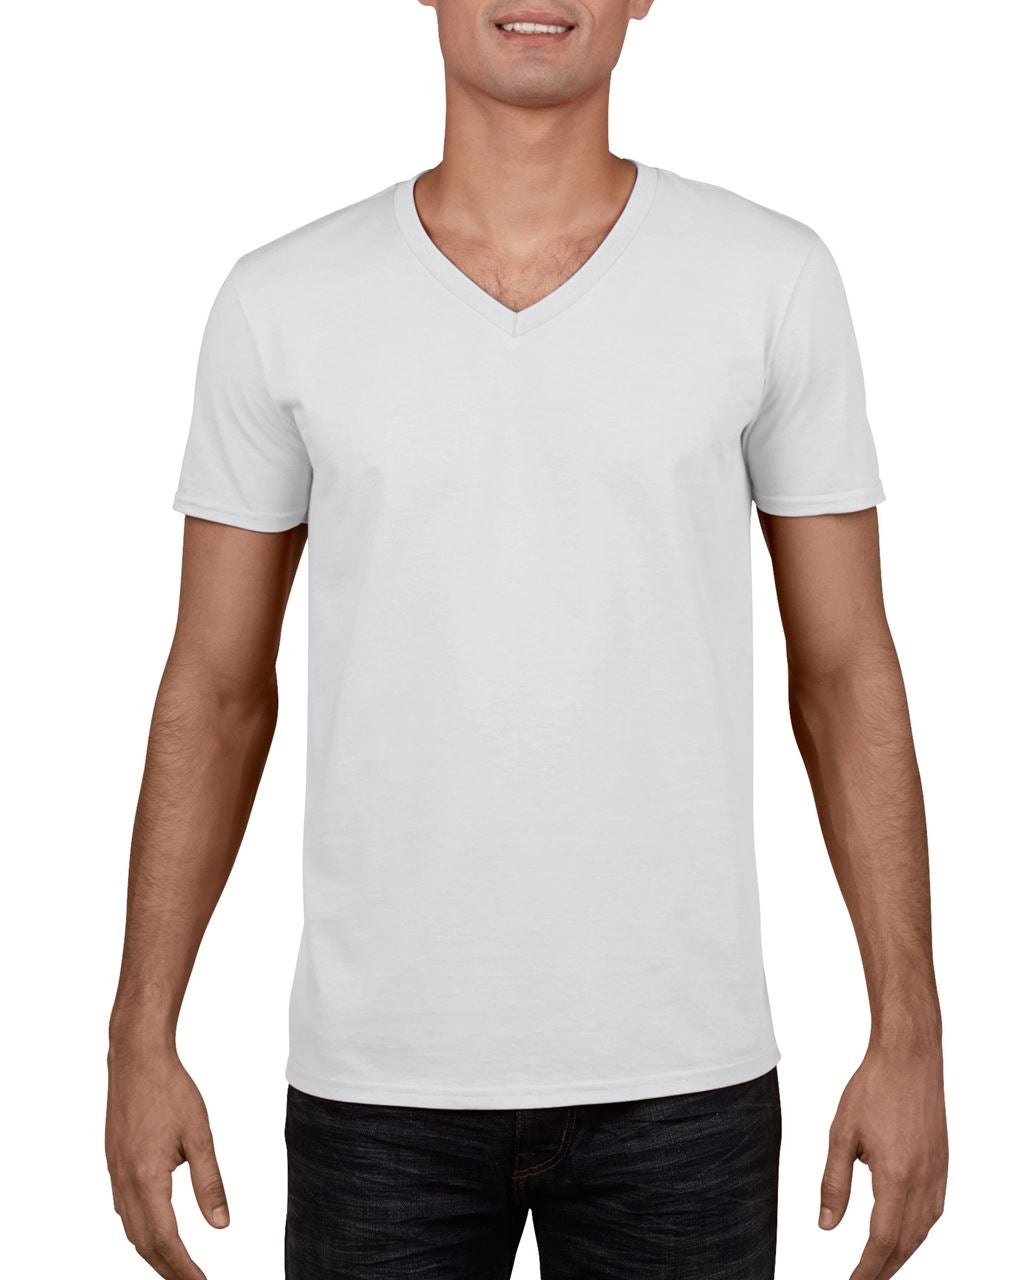 Gildan Herren T-Shirt V-Neck Shirt V-Ausschnitt Kurzarm Basic